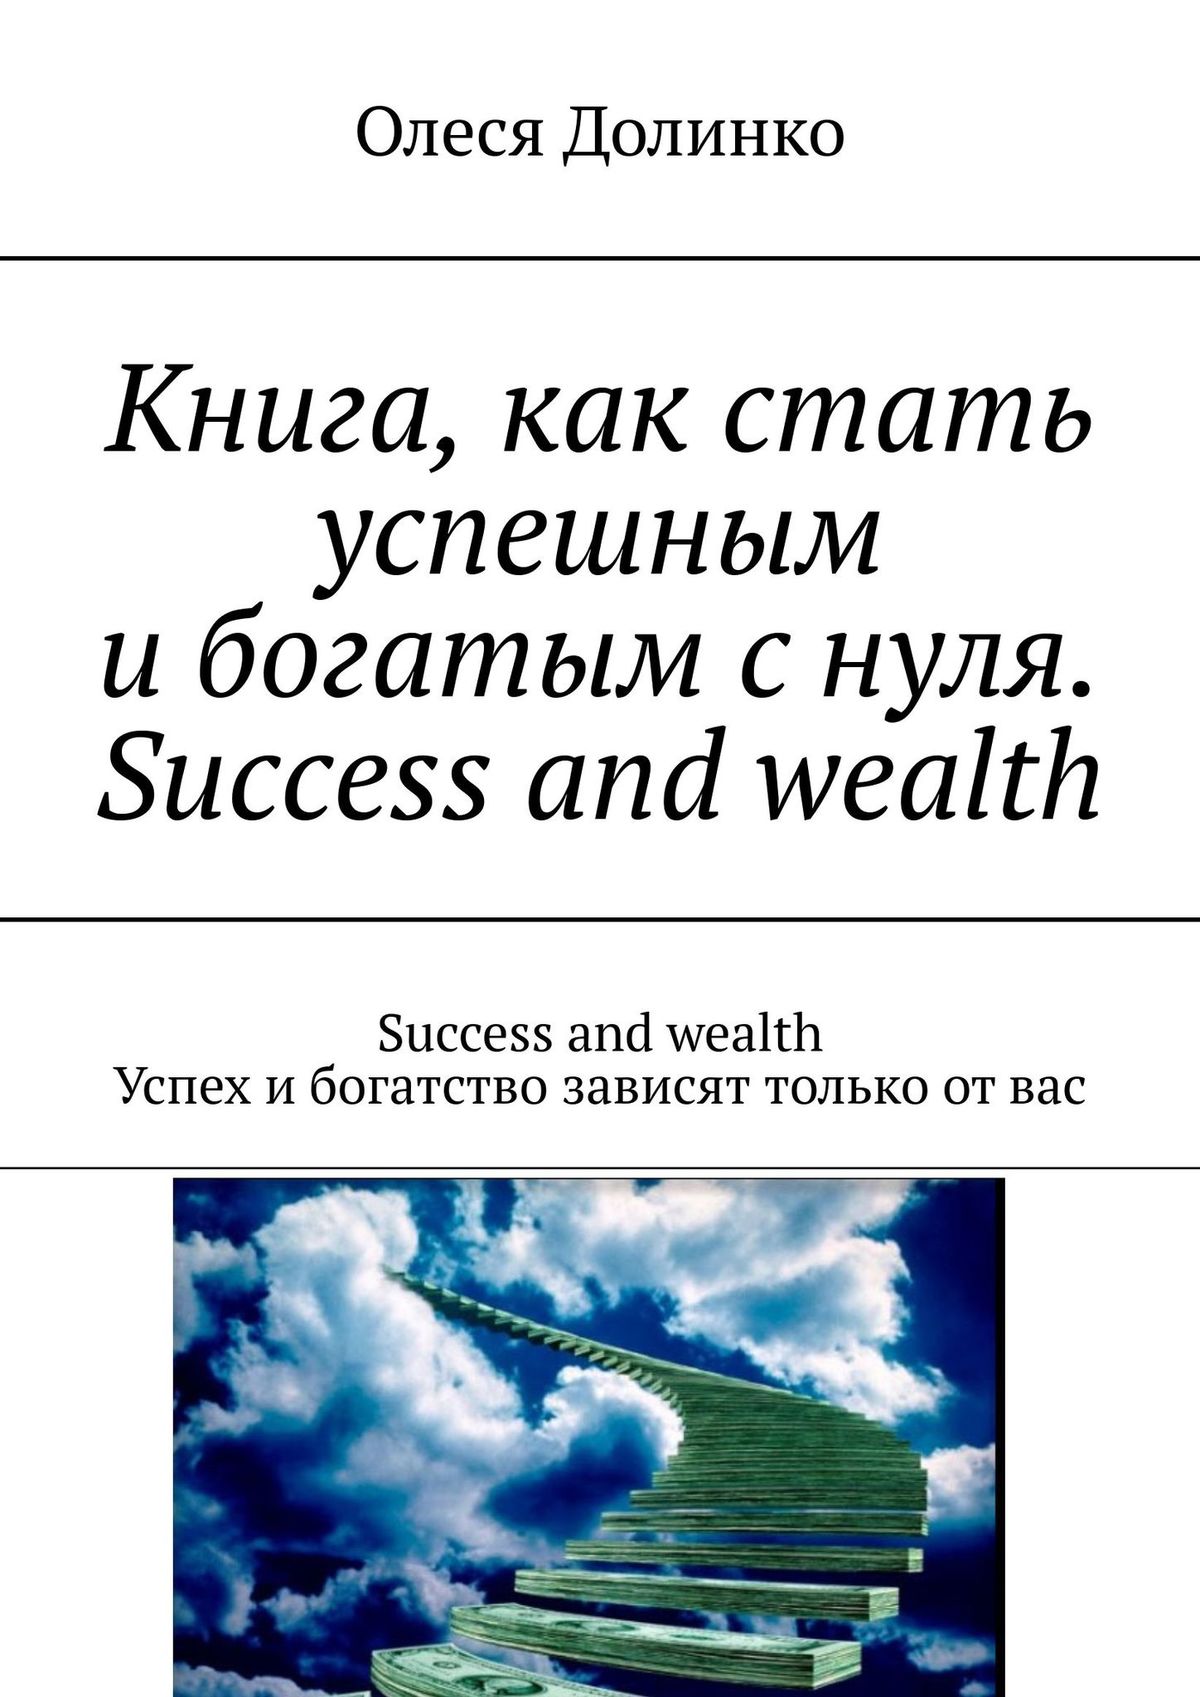 Книга, как стать успешным и богатым с нуля. Success and wealth. Success and wealth. Успех и богатство зависят только от вас